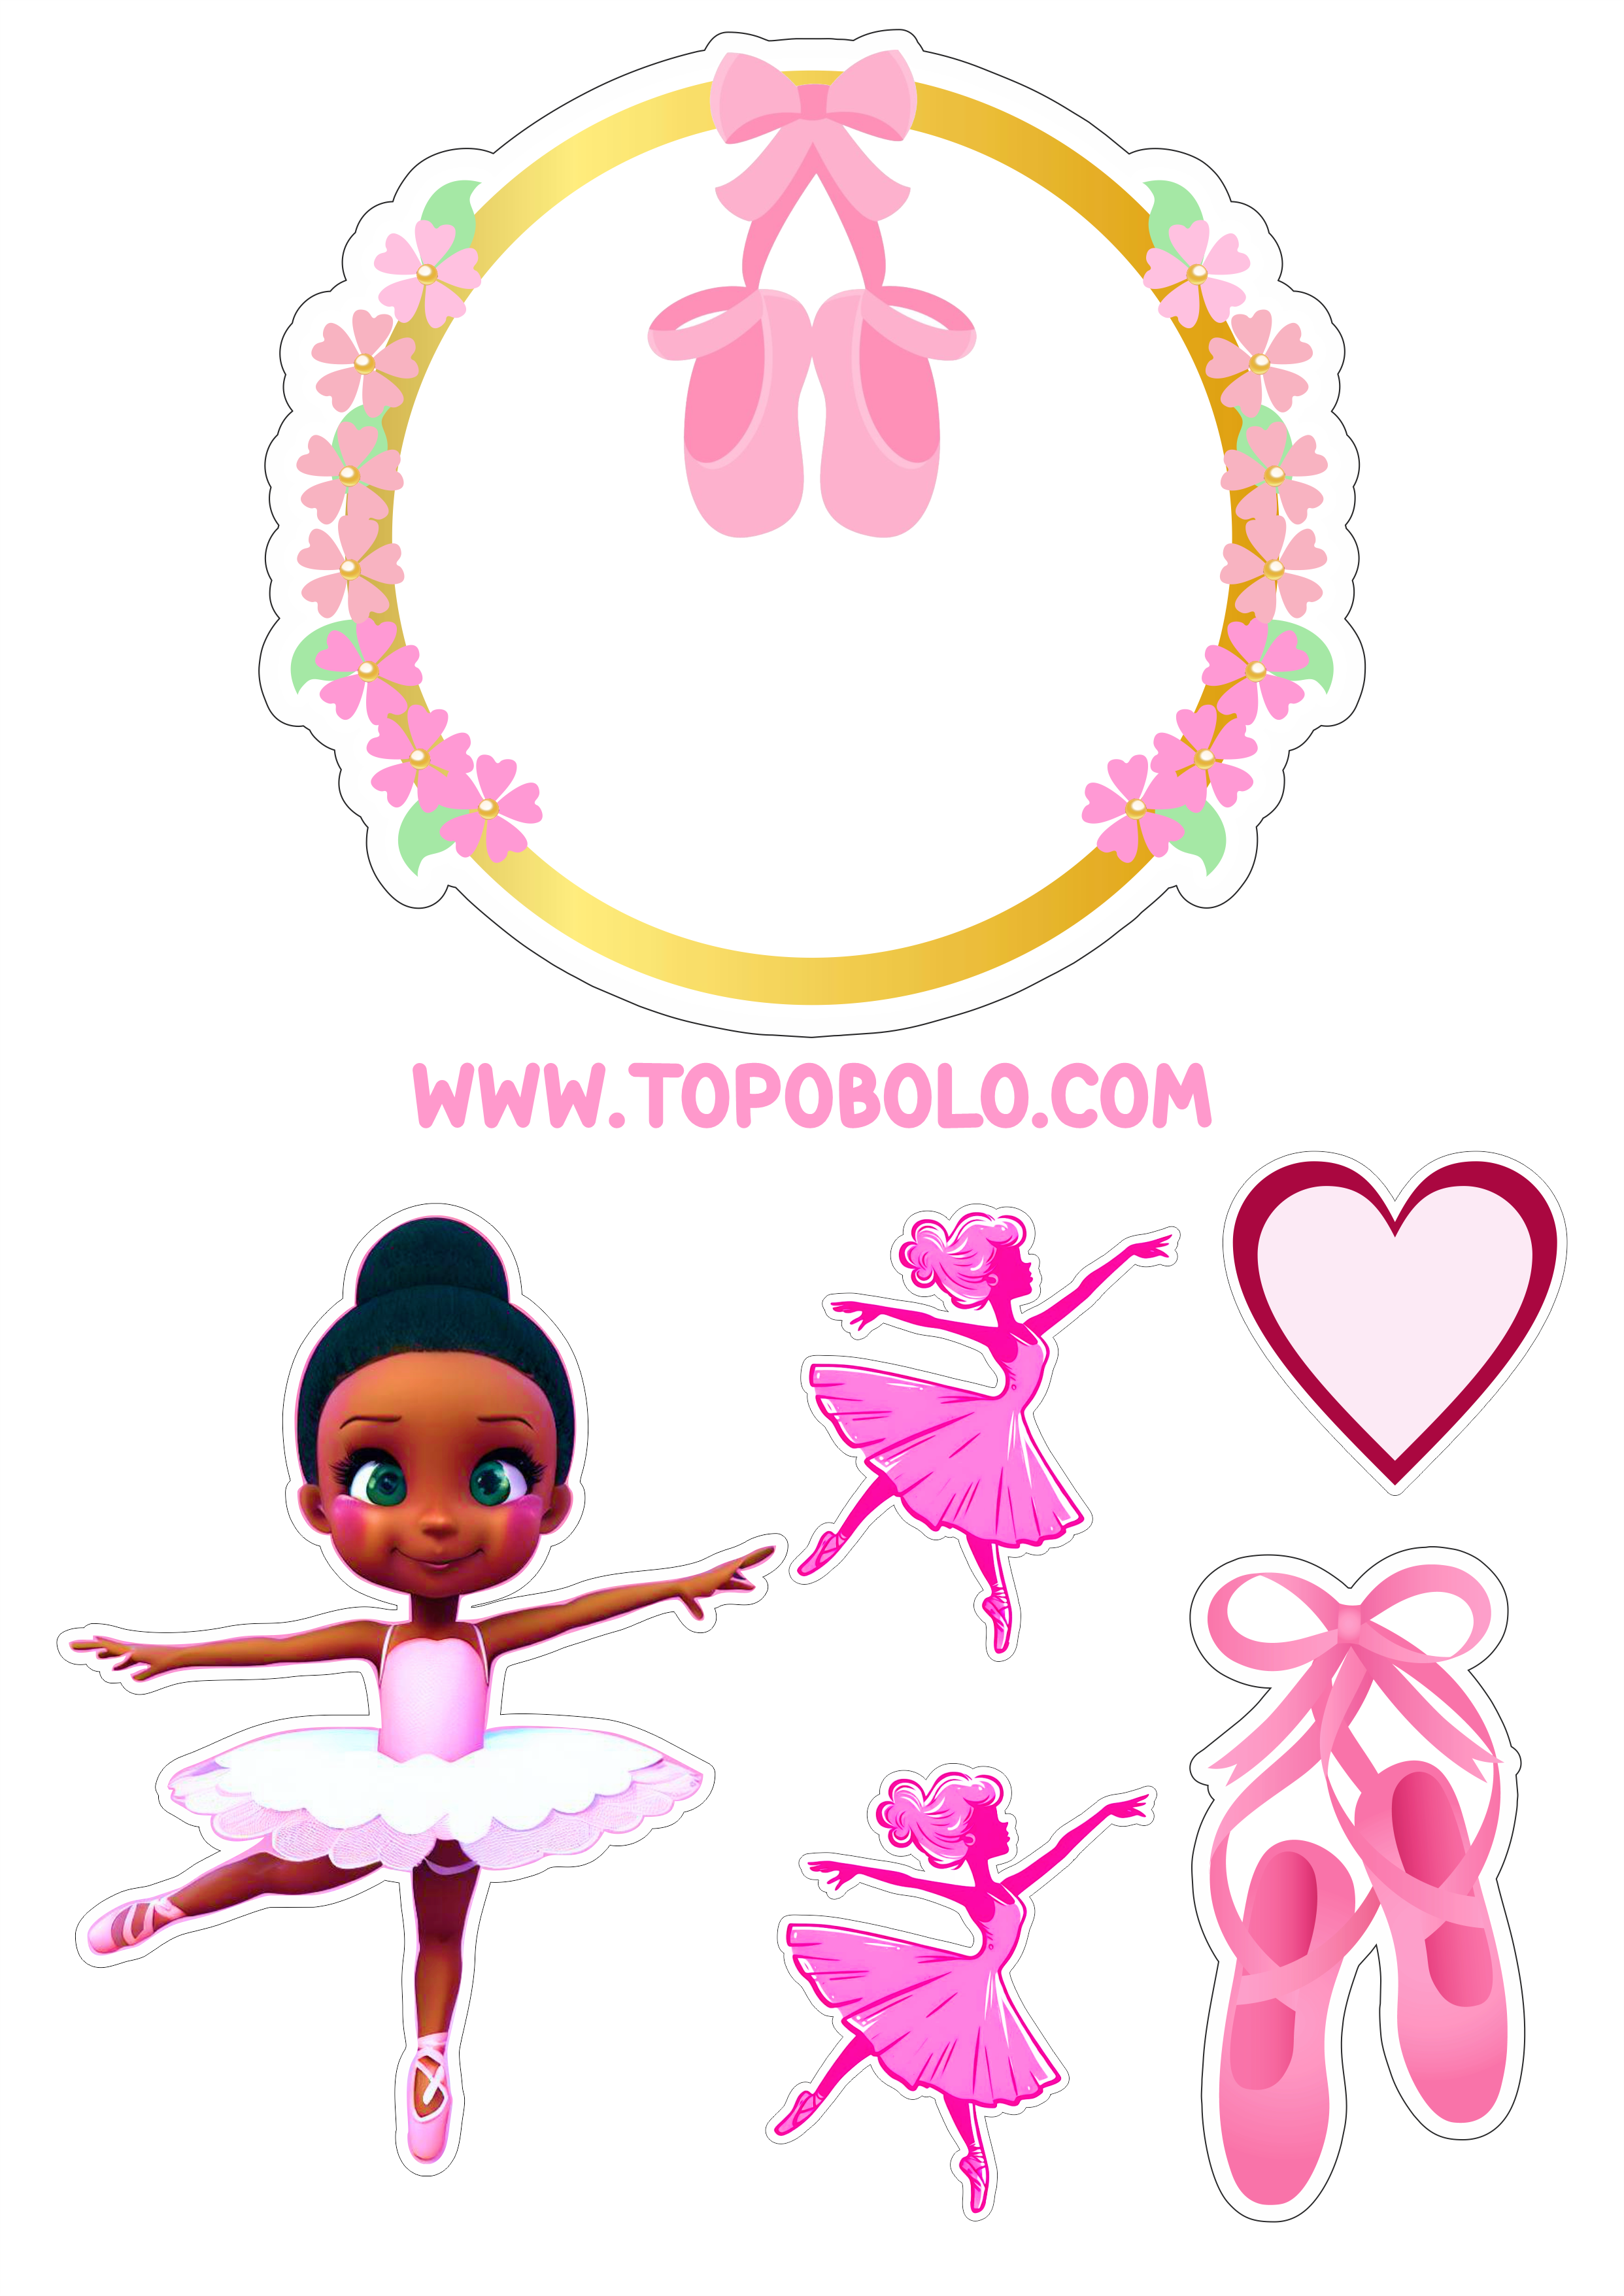 Bailarina topo de bolo aniversário menina rosa com corações boneca fofinha bolo personalizado png image papelaria criativa